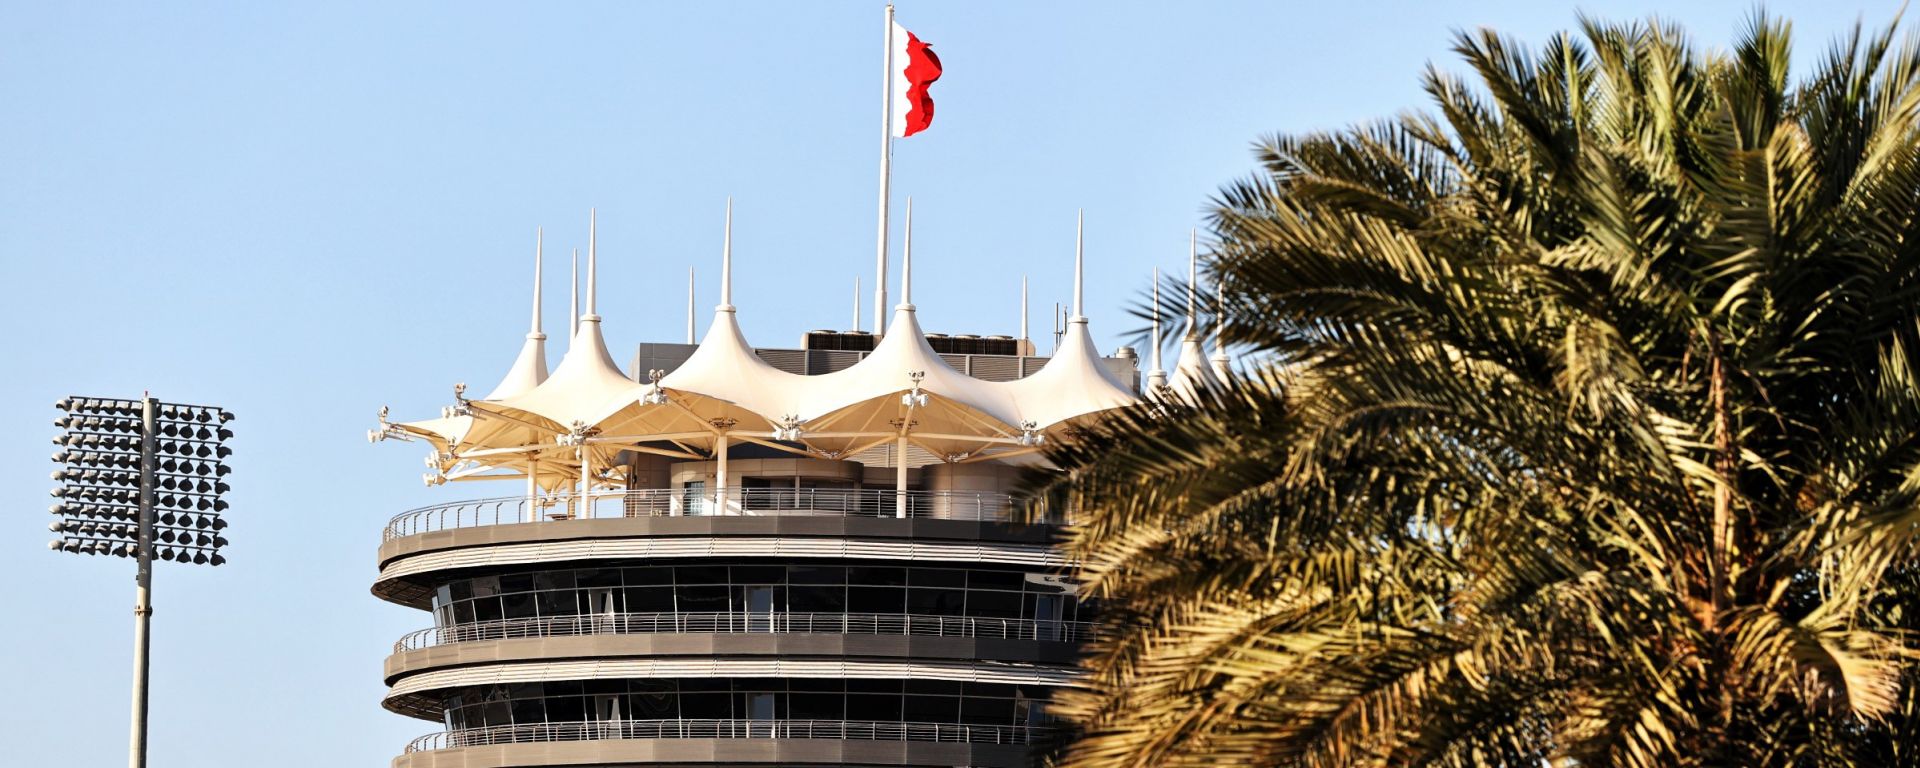 GP Bahrain 2021: risultati e classifica - MotorBox